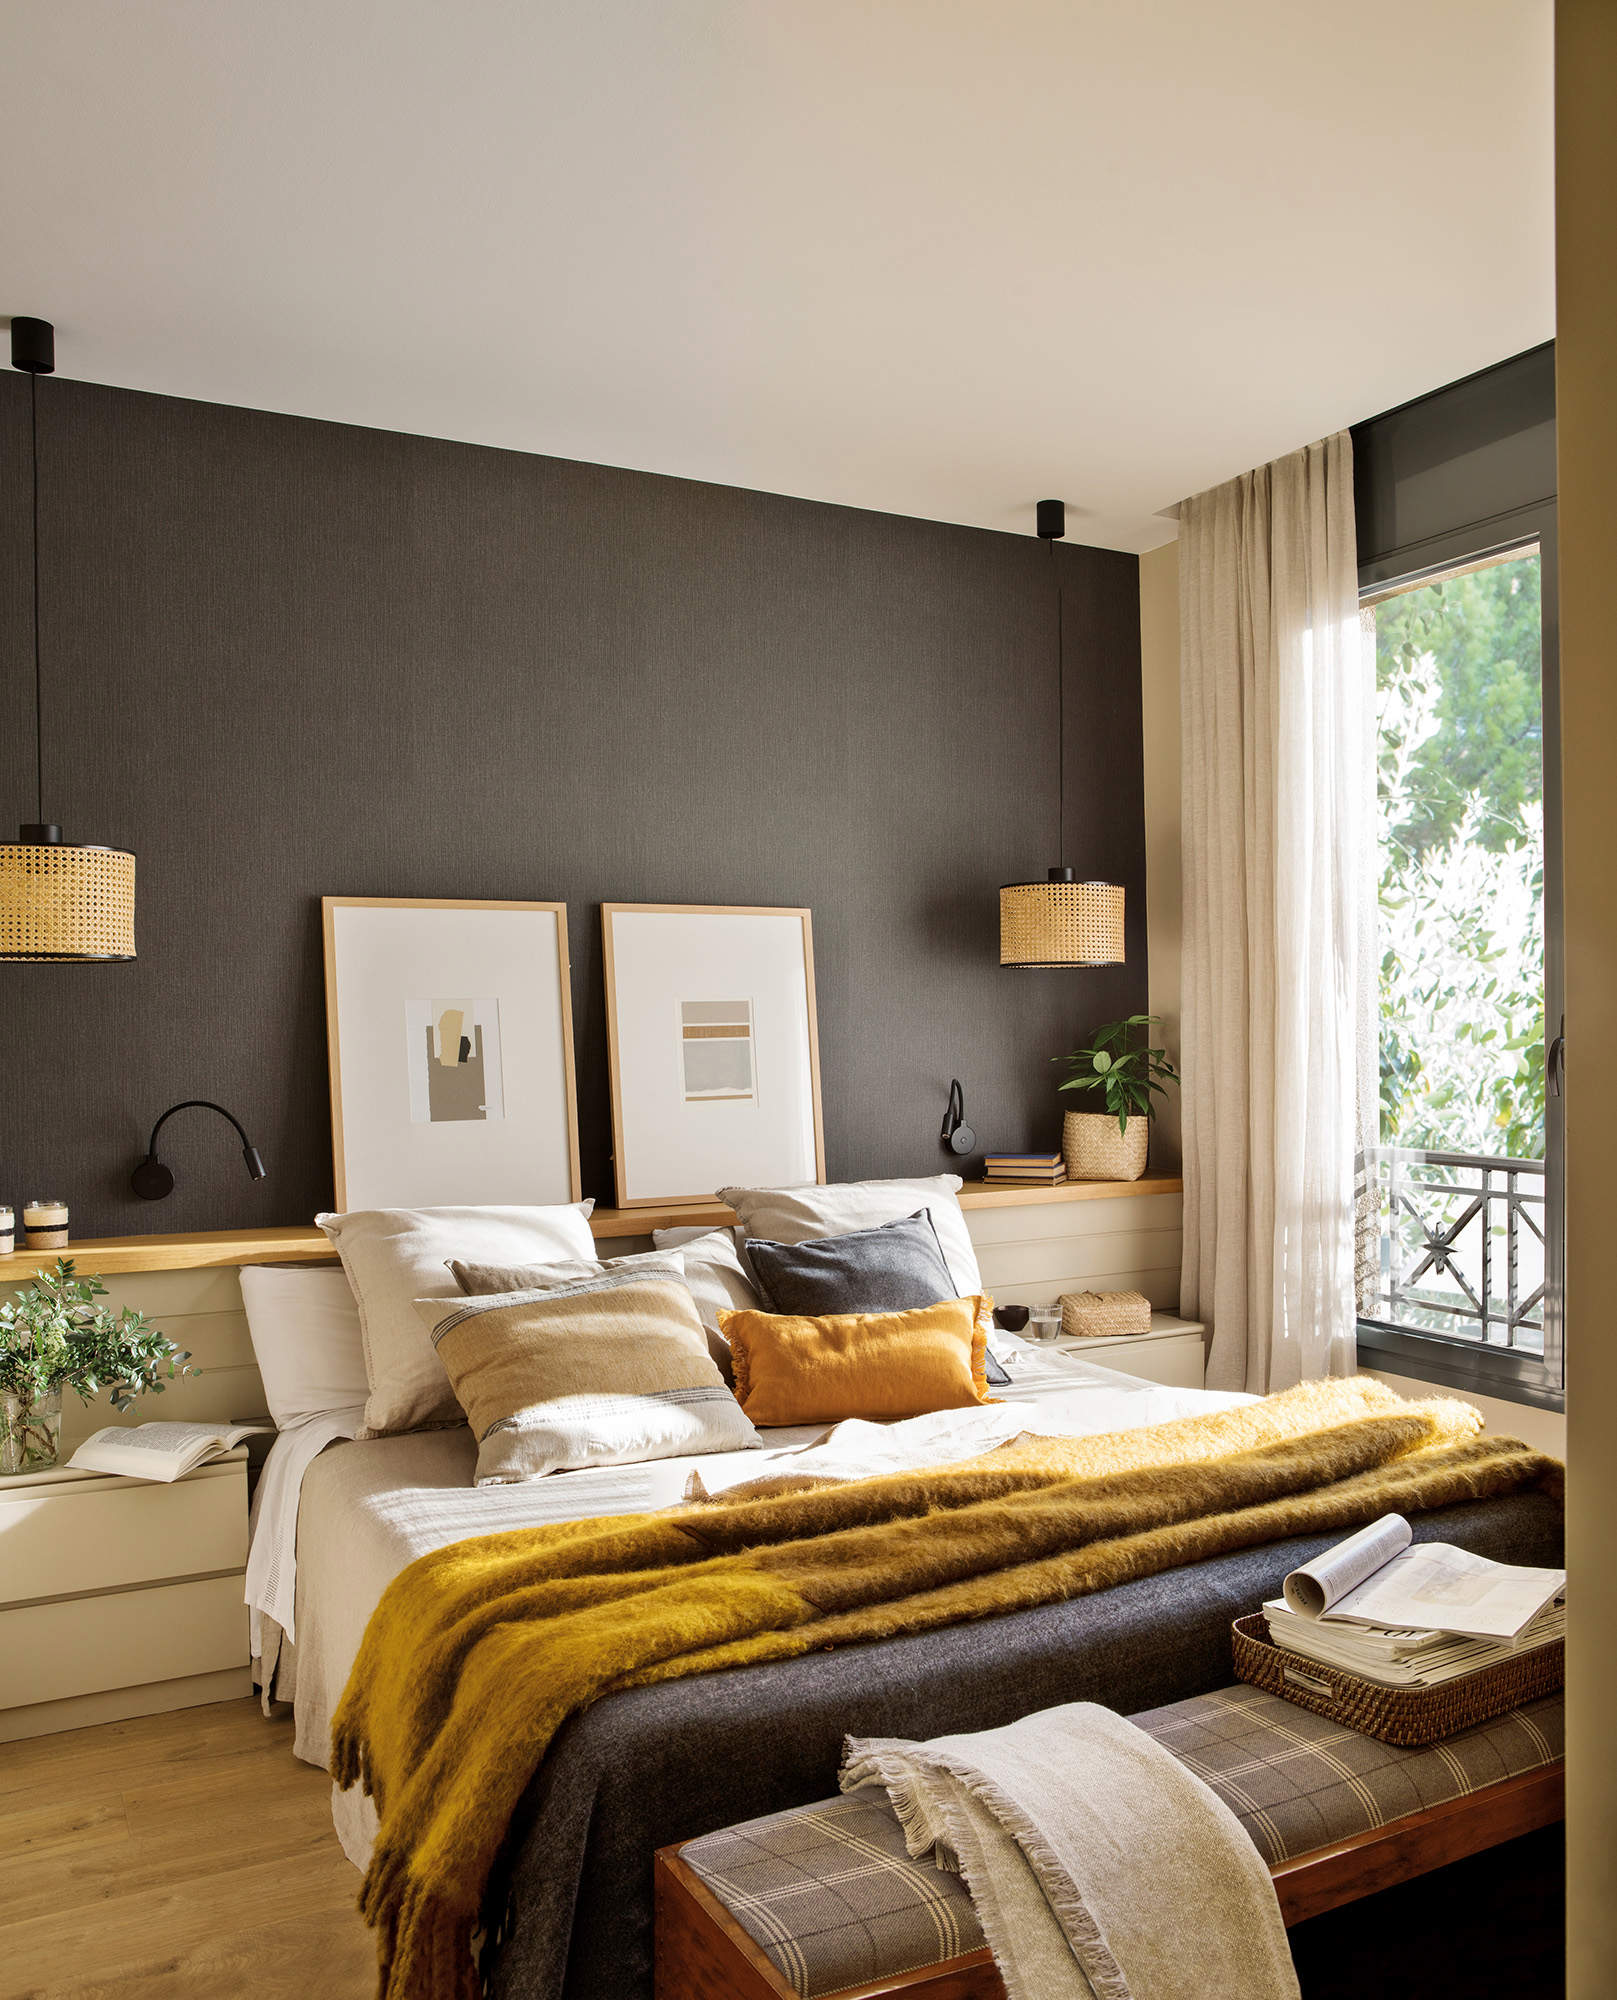 Dormitorio moderno en color gris